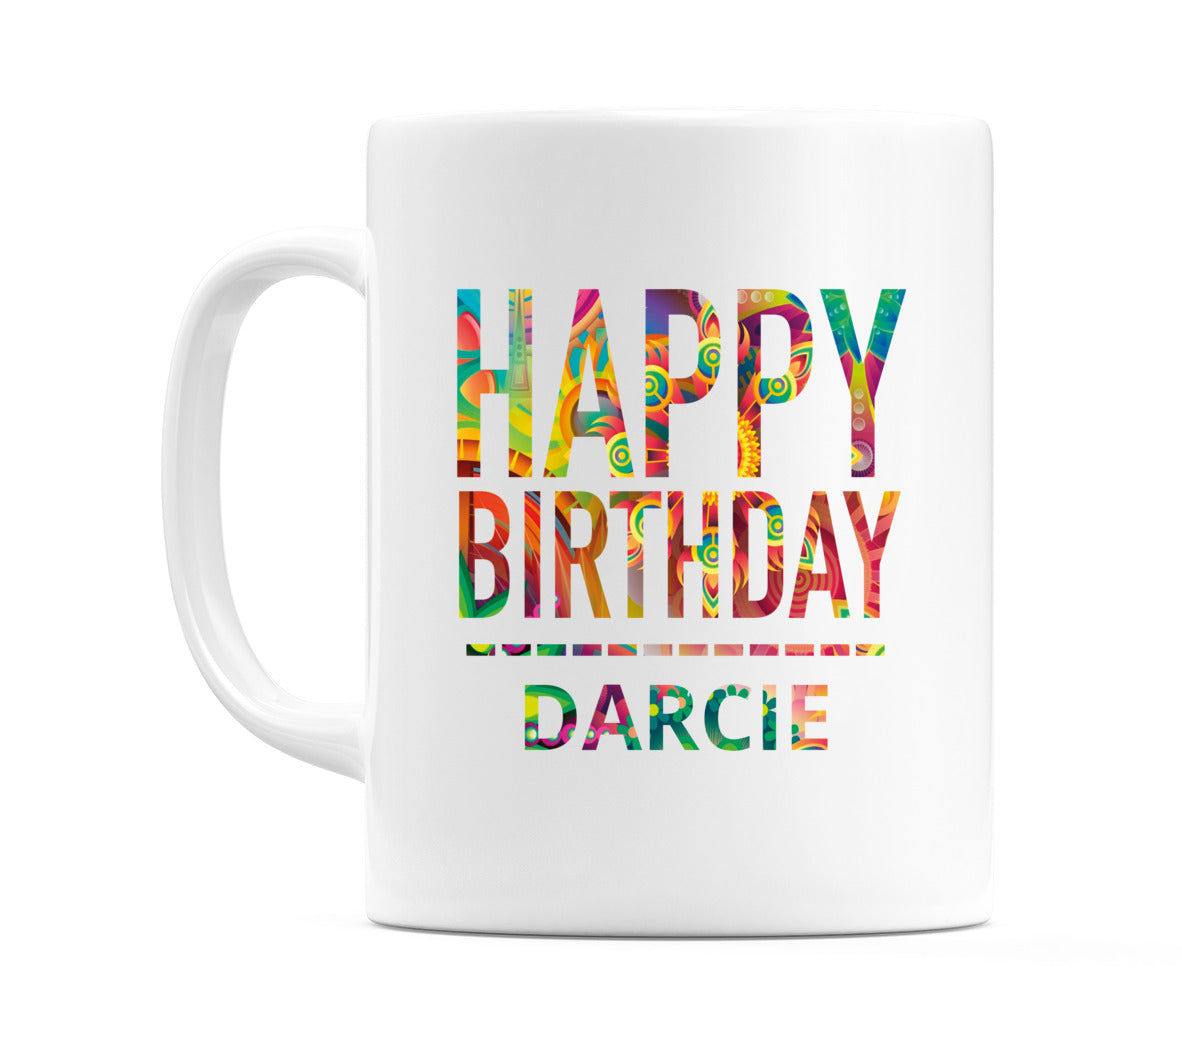 Happy Birthday Darcie (Tie Dye Effect) Mug Cup by WeDoMugs